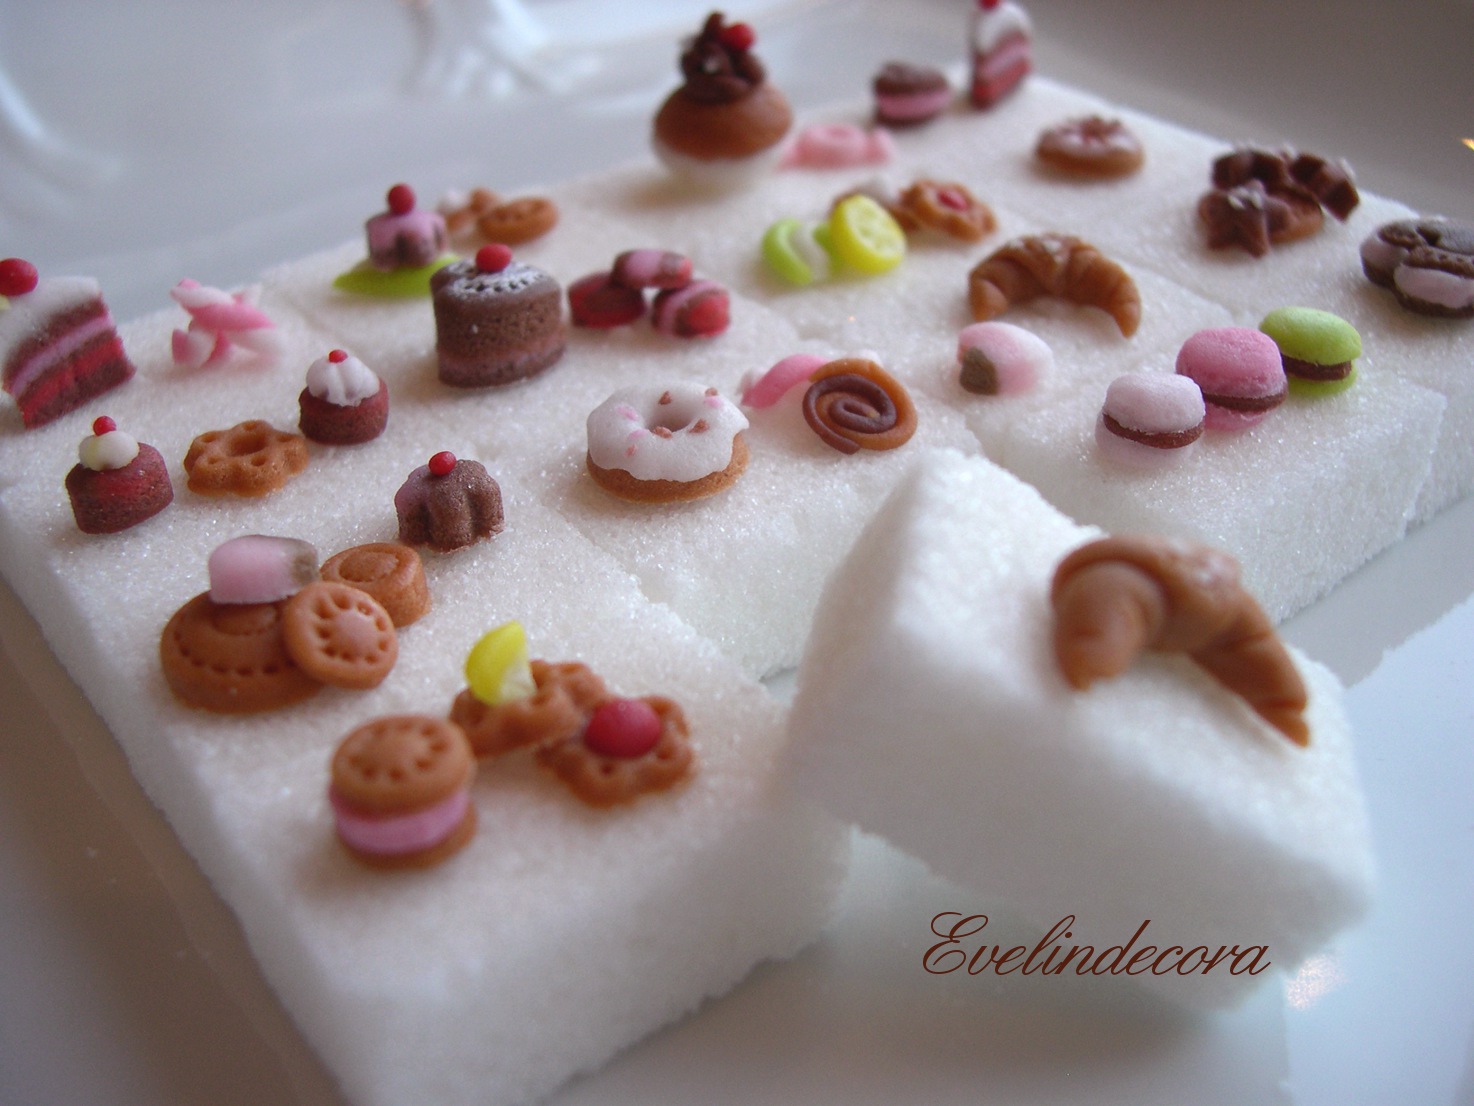 Food miniatures – zollette con decorazioni in pasta di zucchero